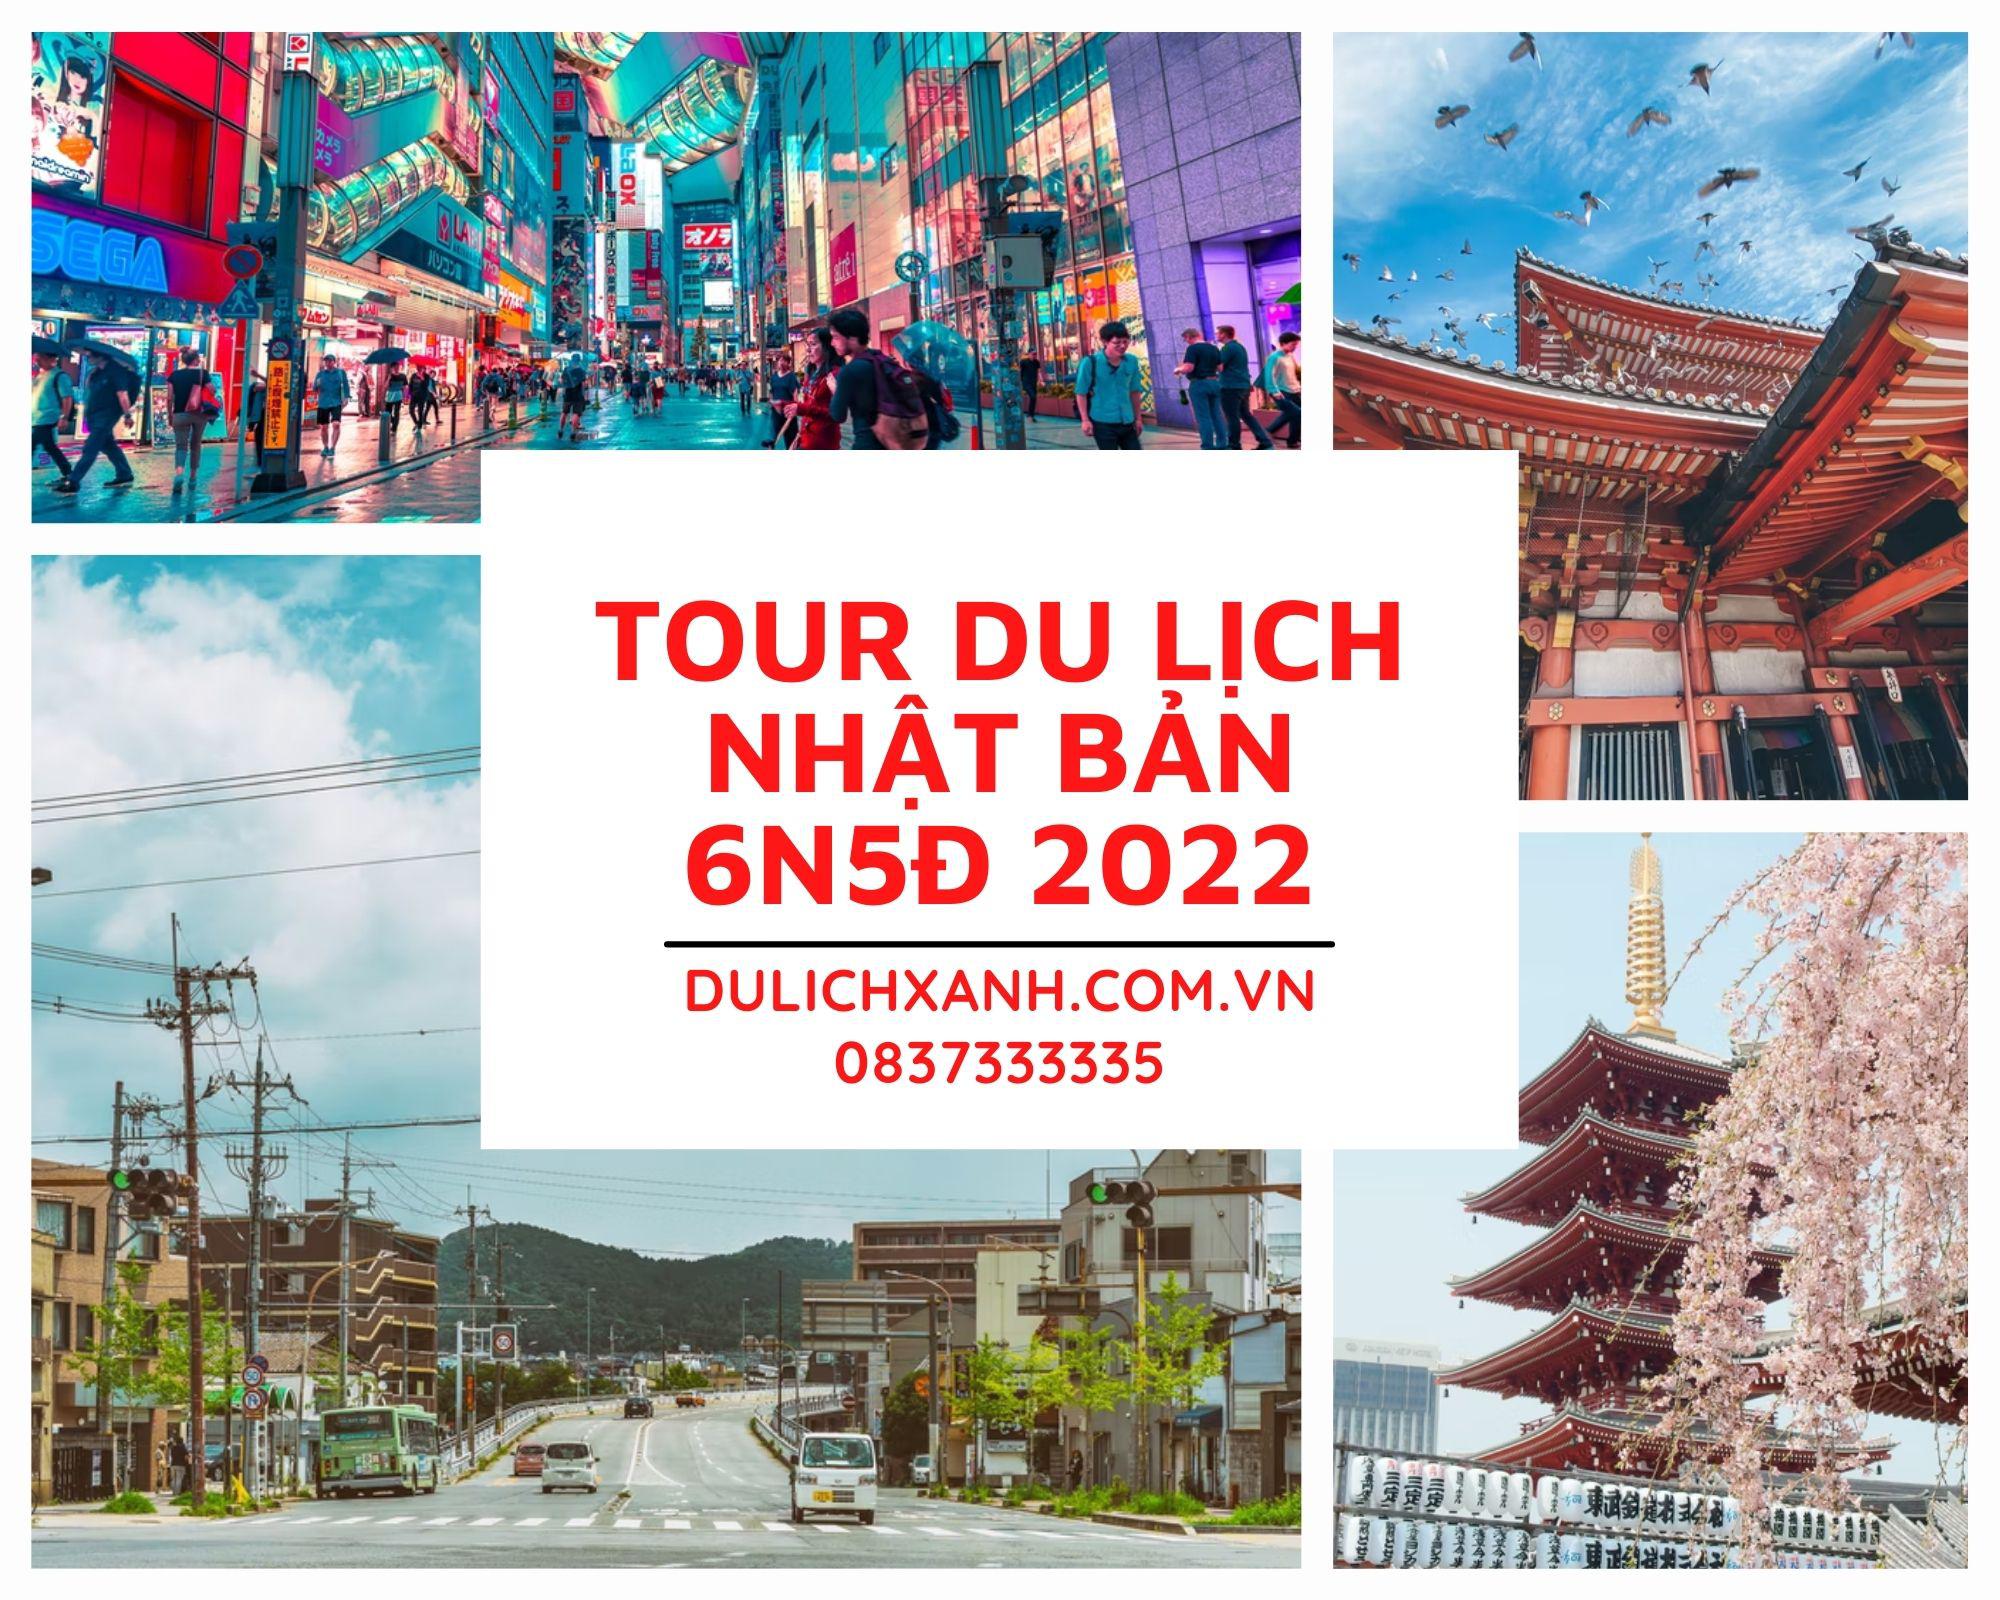 Tour du lịch Nhật Bản mùa hoa Anh Đào 6N5Đ KH: Hà Nội